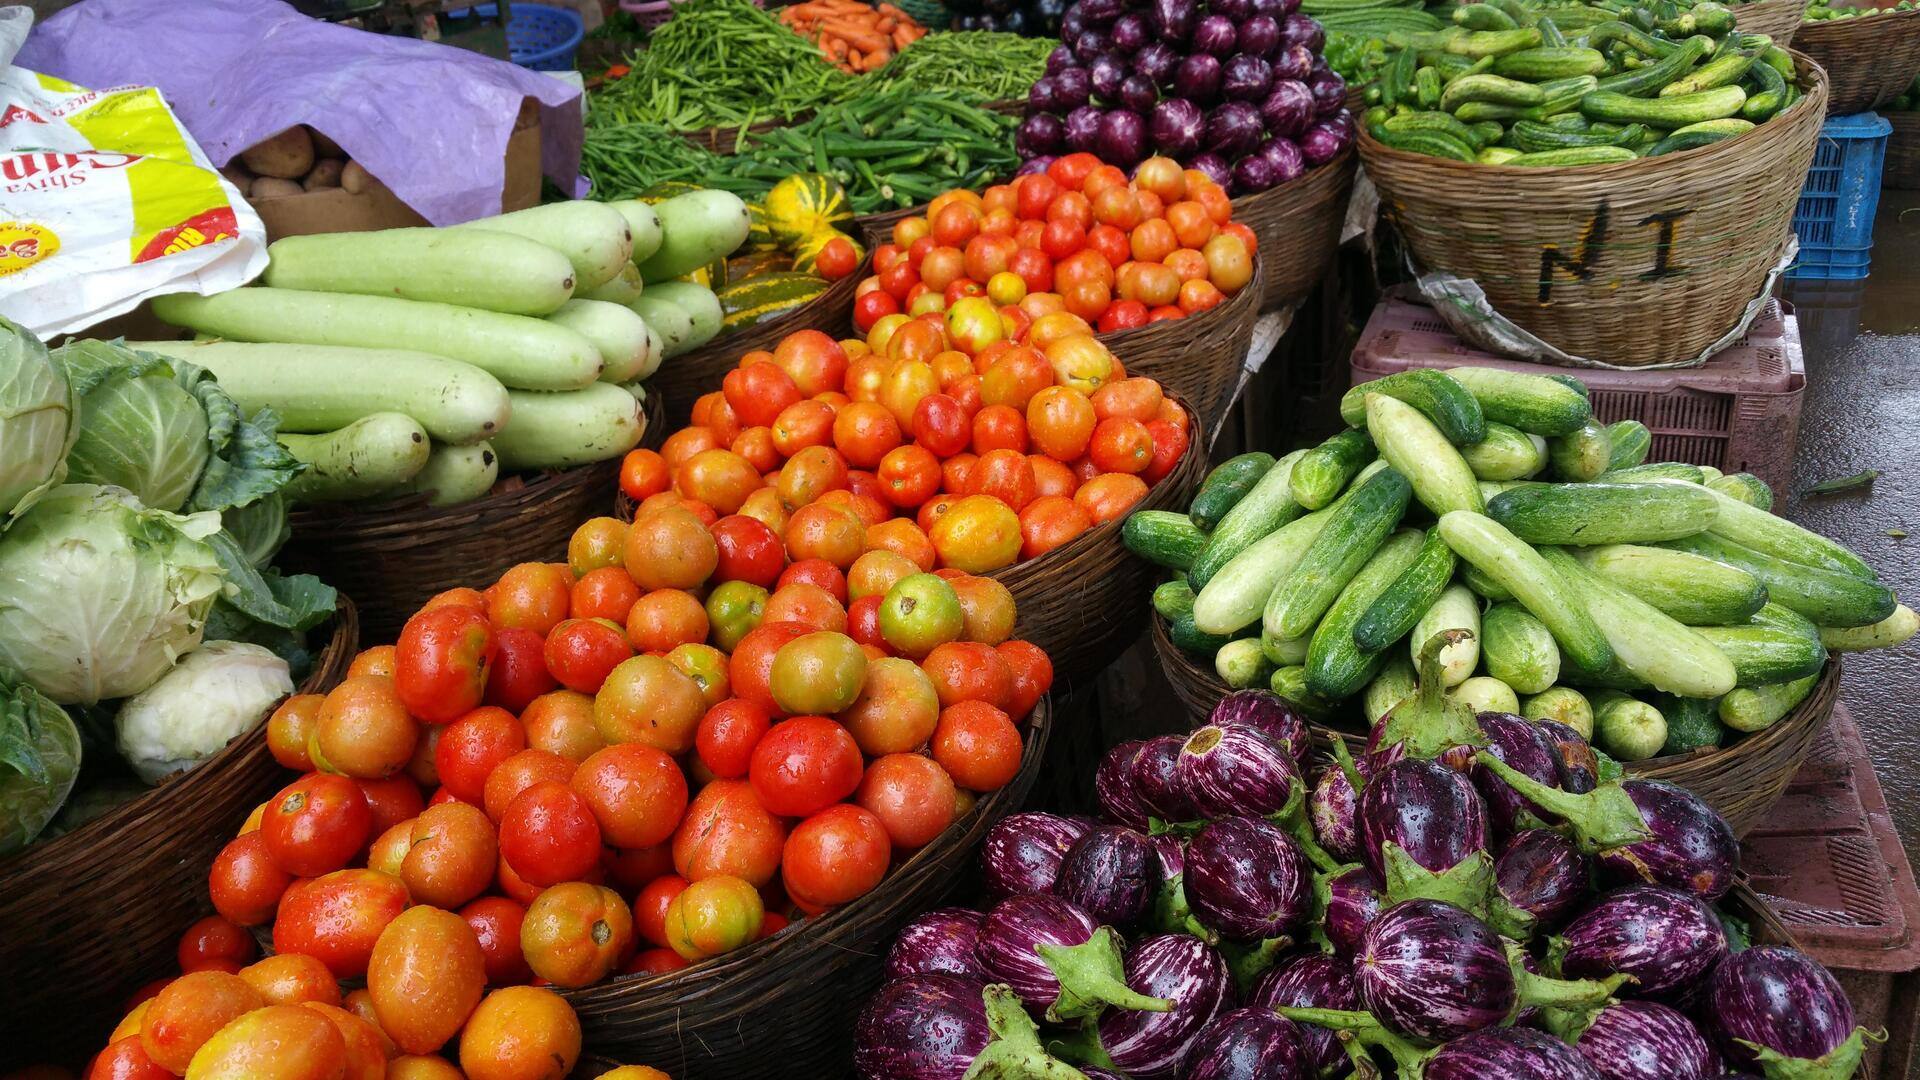 सब्जियों की कीमत ने फीका किया खाने का स्वाद, टमाटर 150 तो मिर्च 400 रुपये किलोग्राम